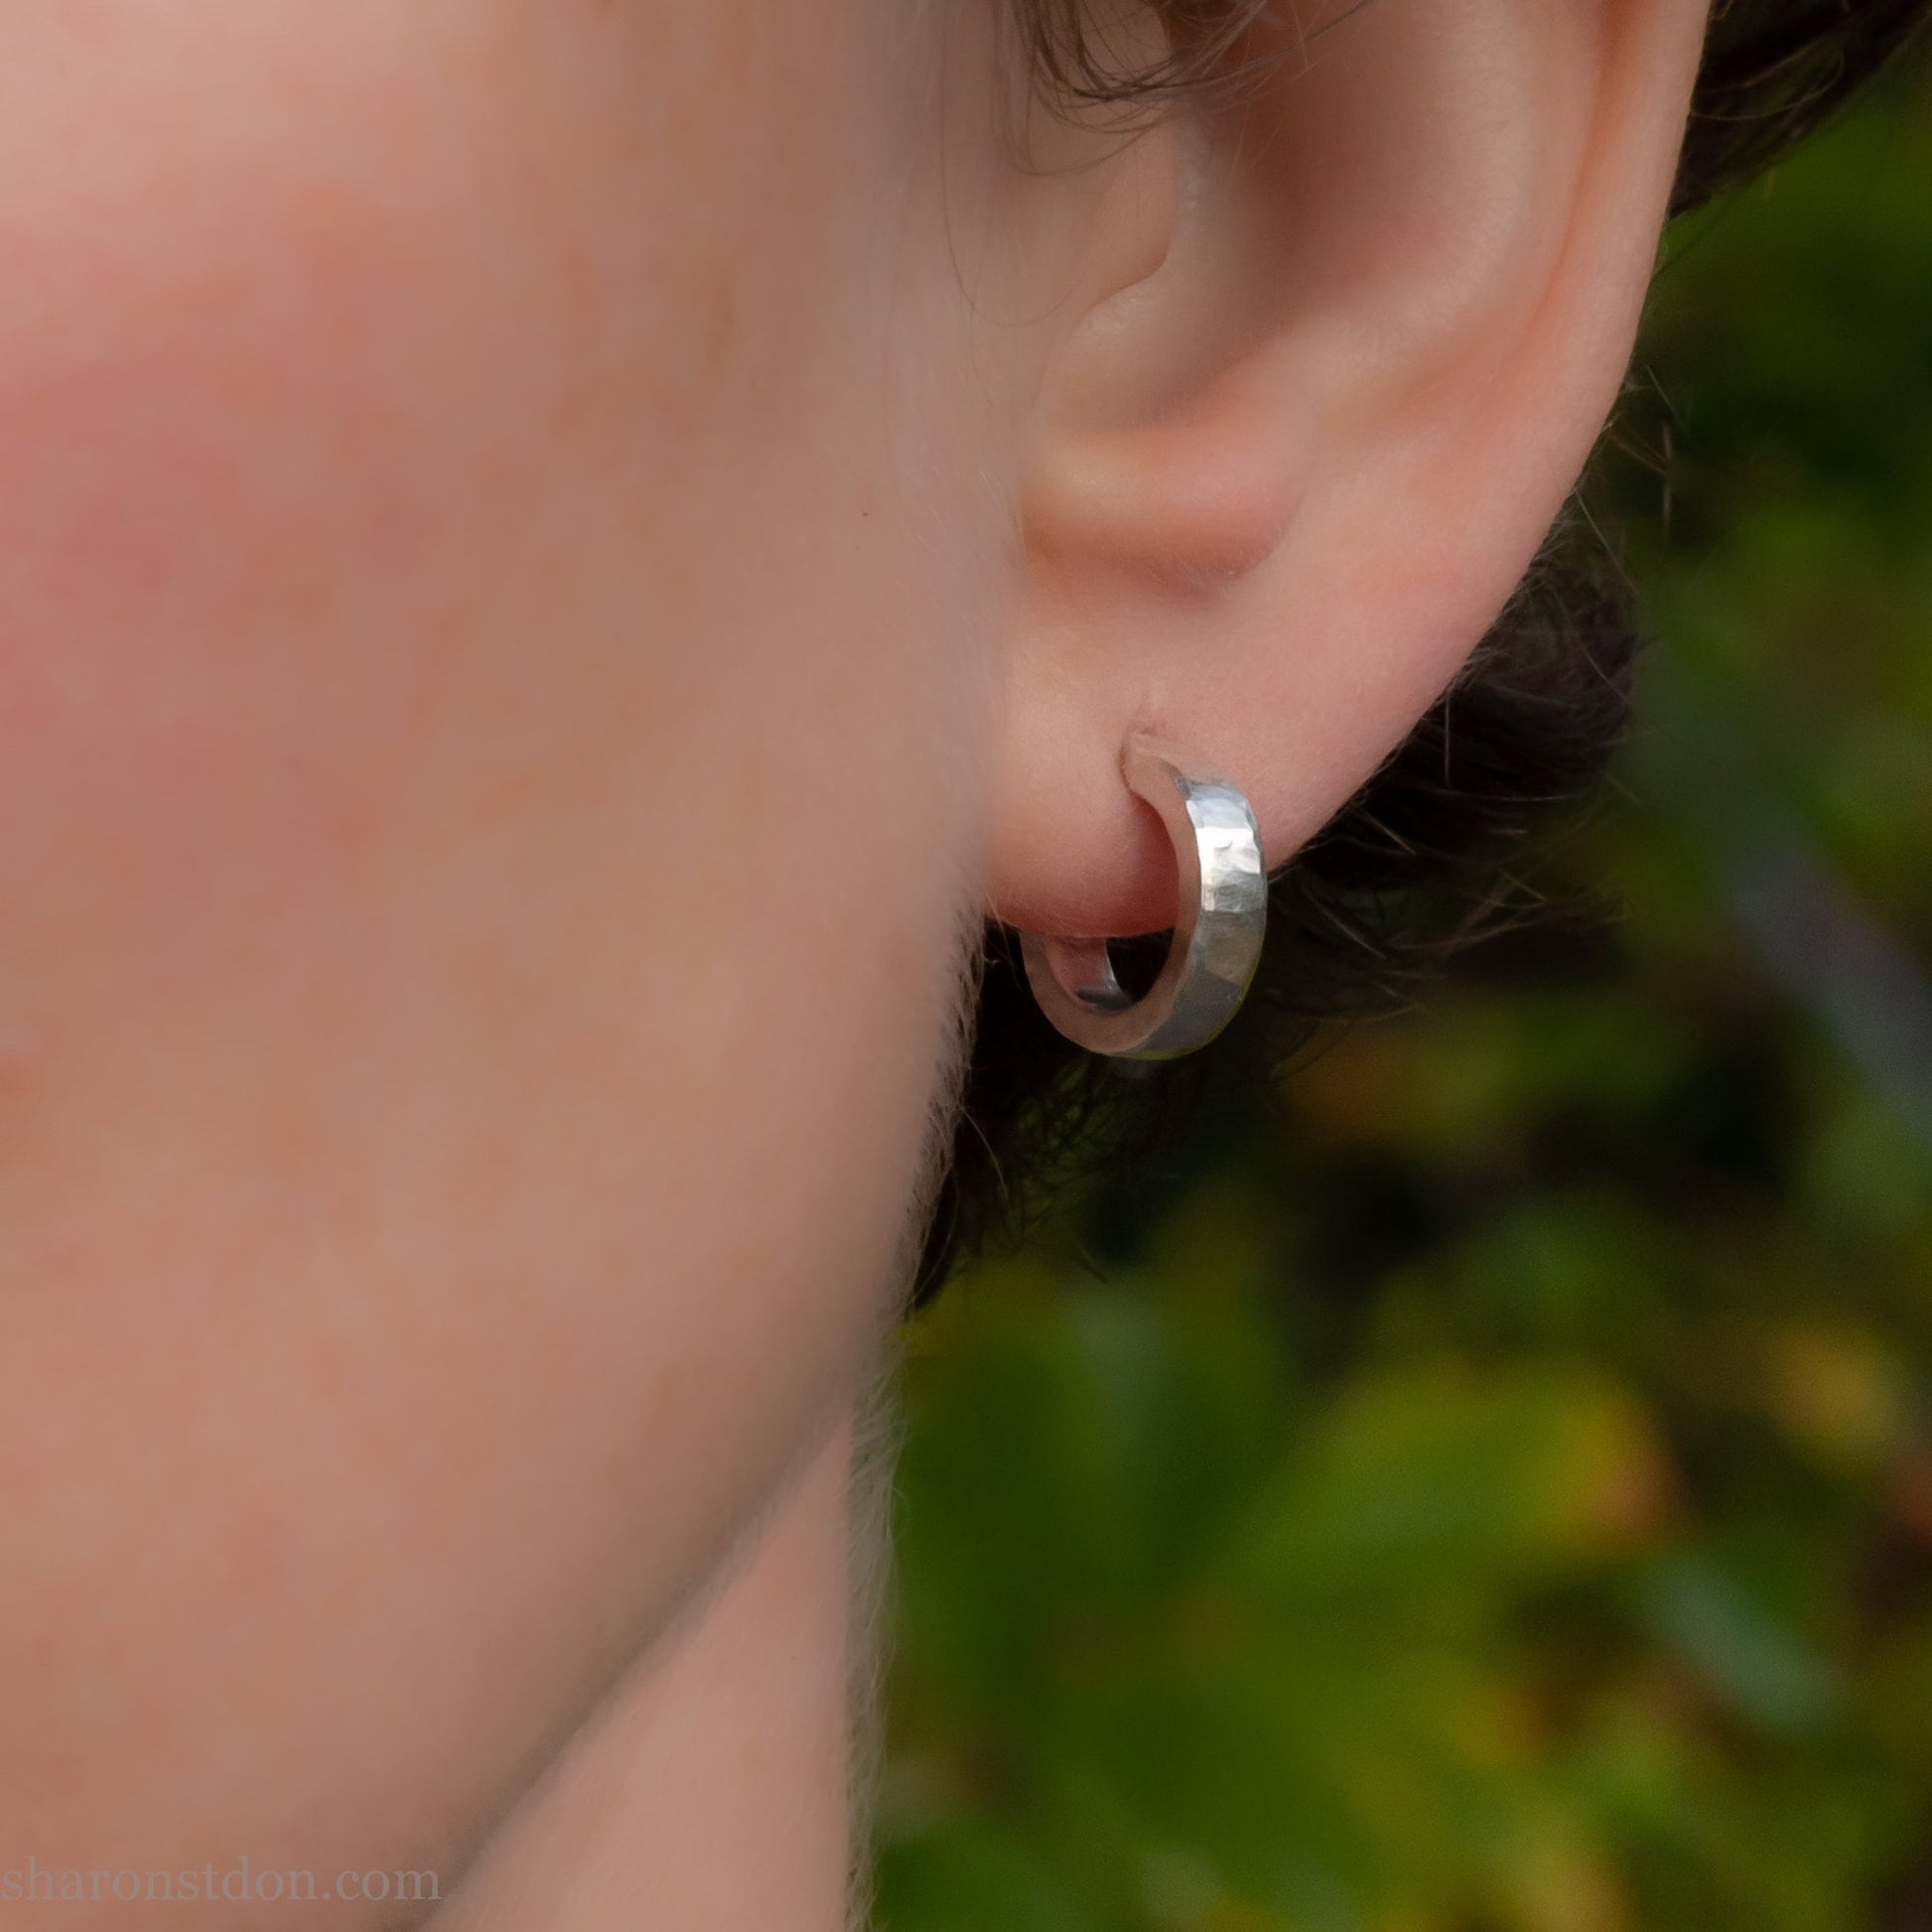 12 x 3mm 925 sterling silver hoop earrings.